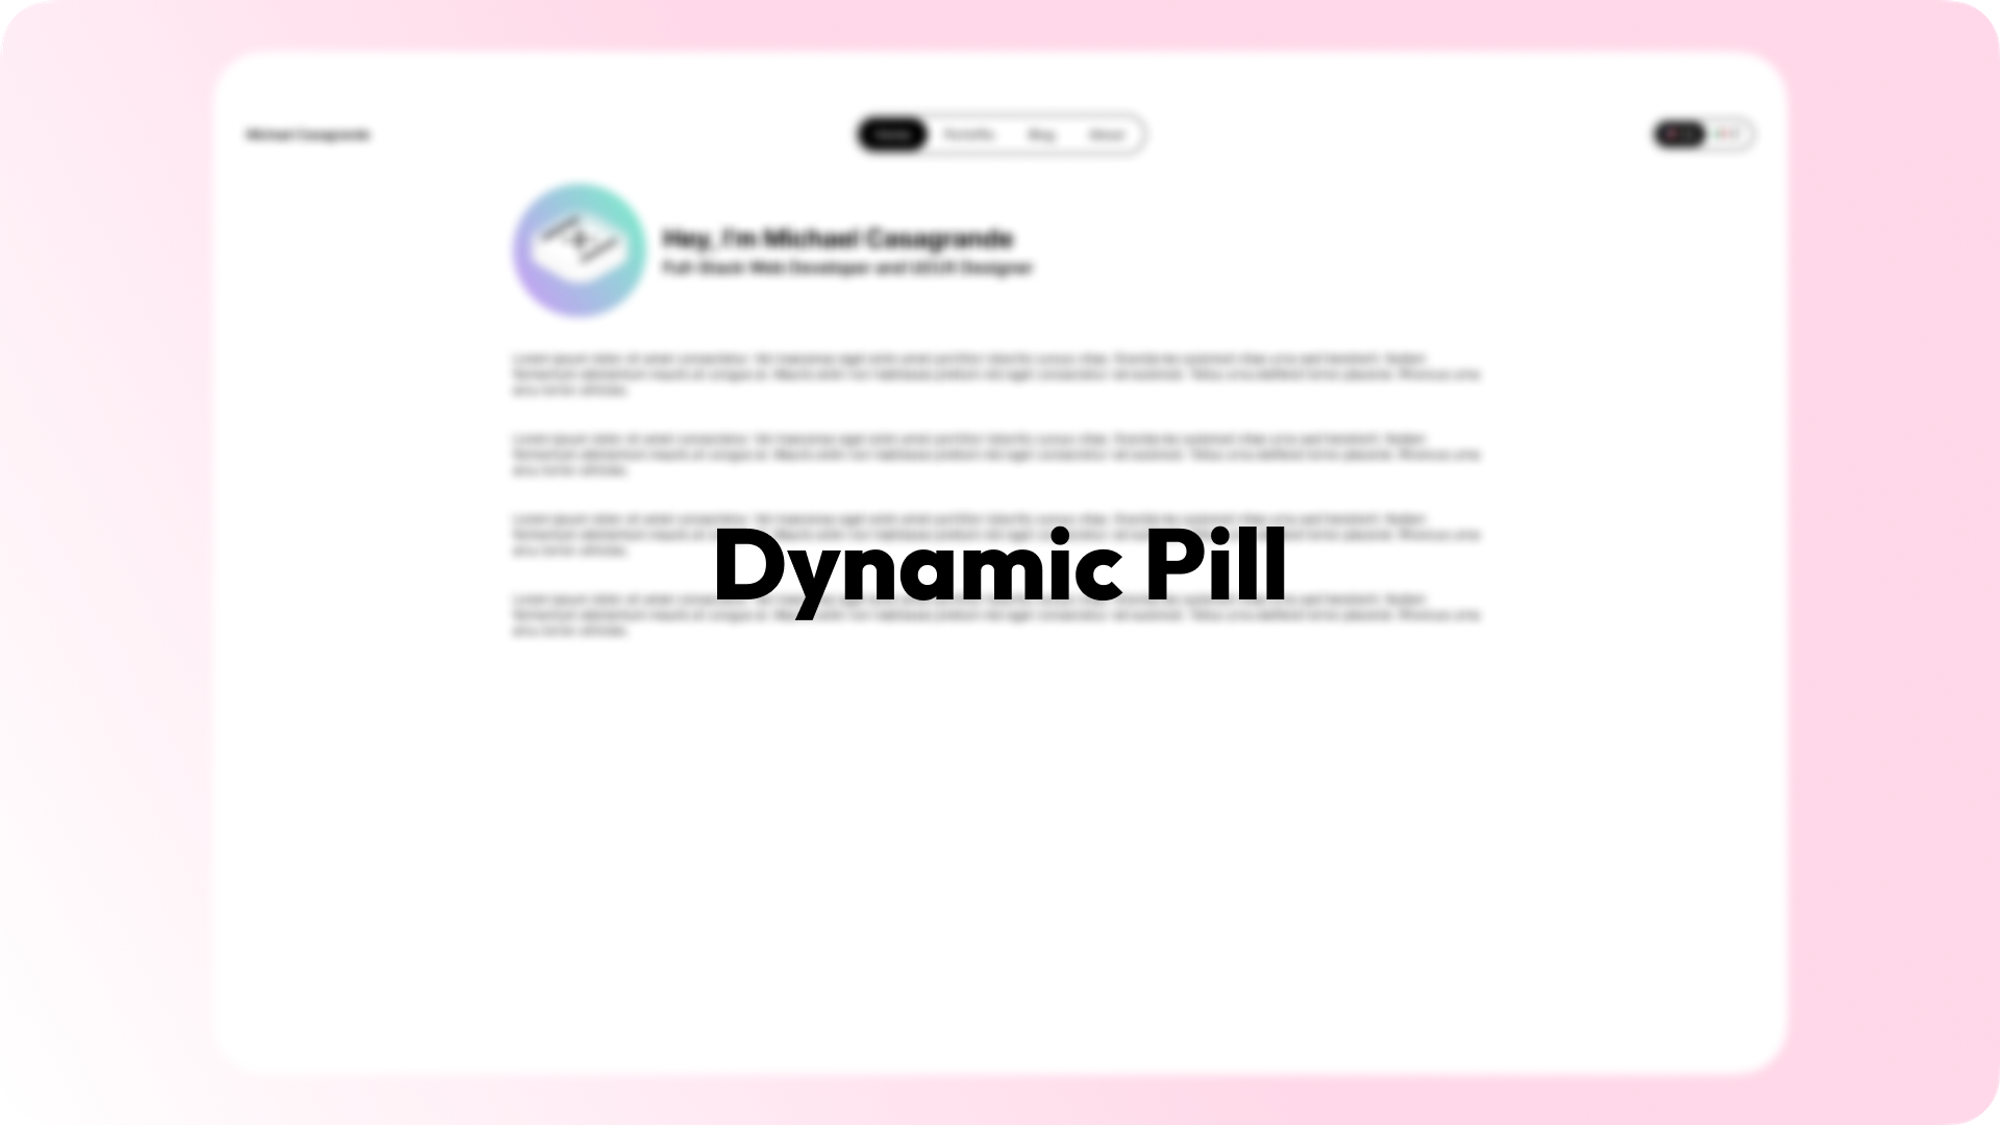 Dyanimc Pill